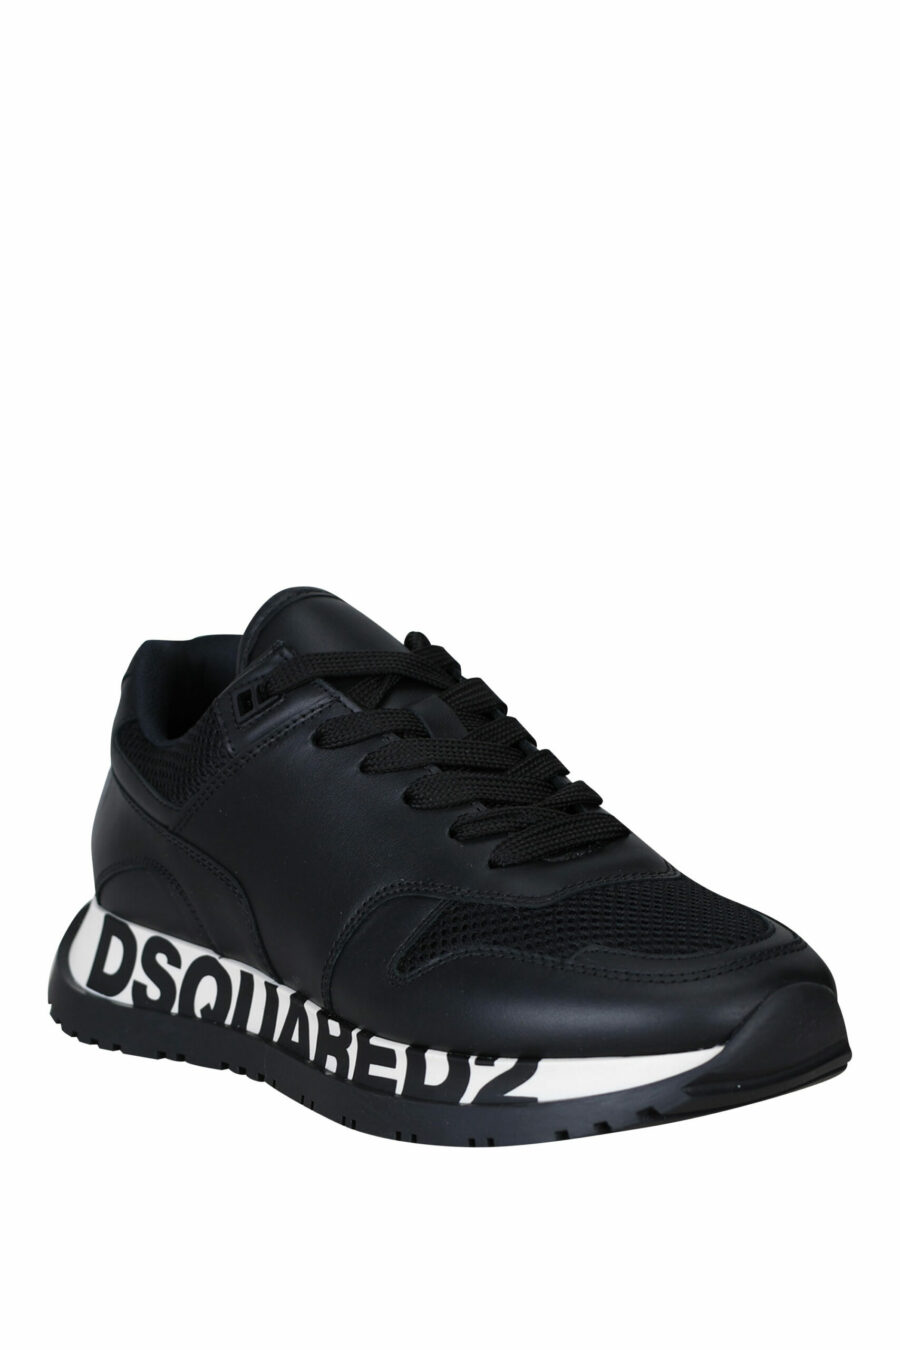 Dsquared2 - Zapatillas negras con logo en suela negro - BLS Fashion